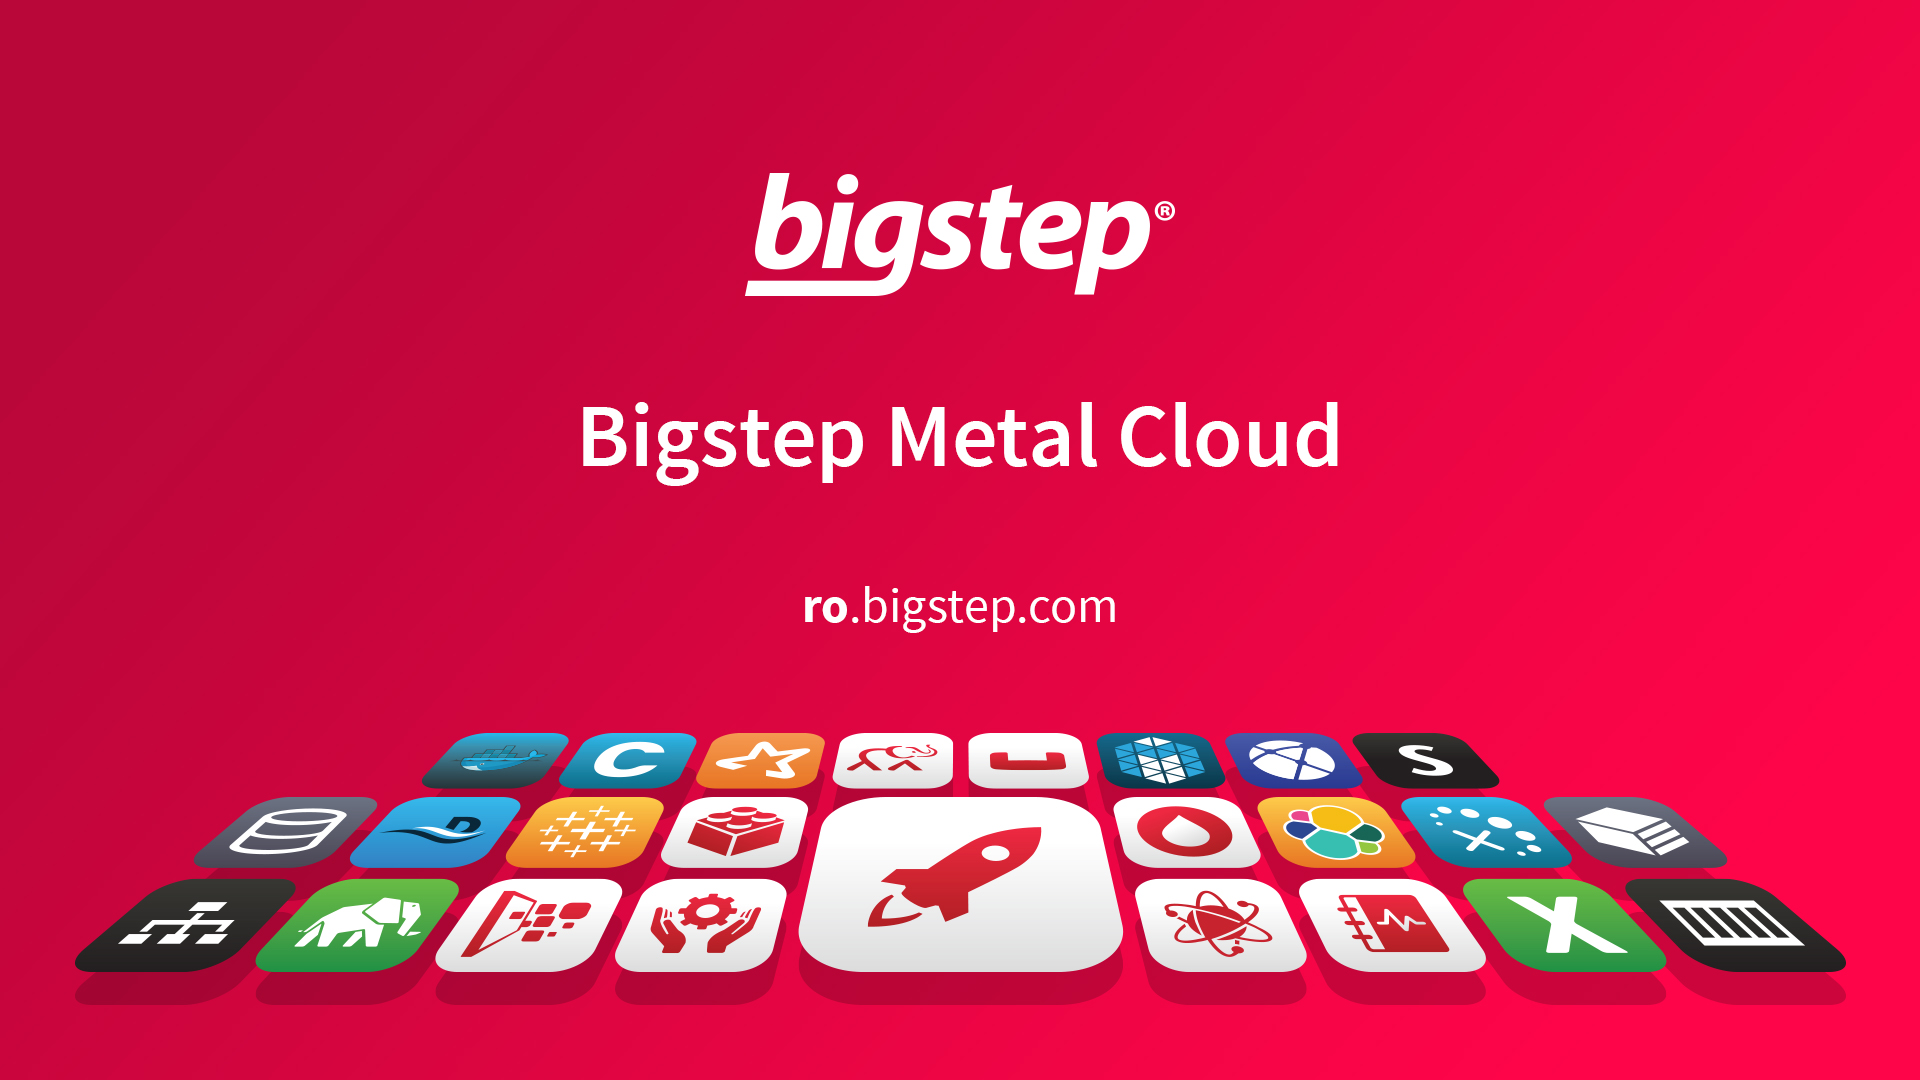 Bigstep debutează pe piața din România cu un portofoliu de servicii de bare-metal cloud și big data